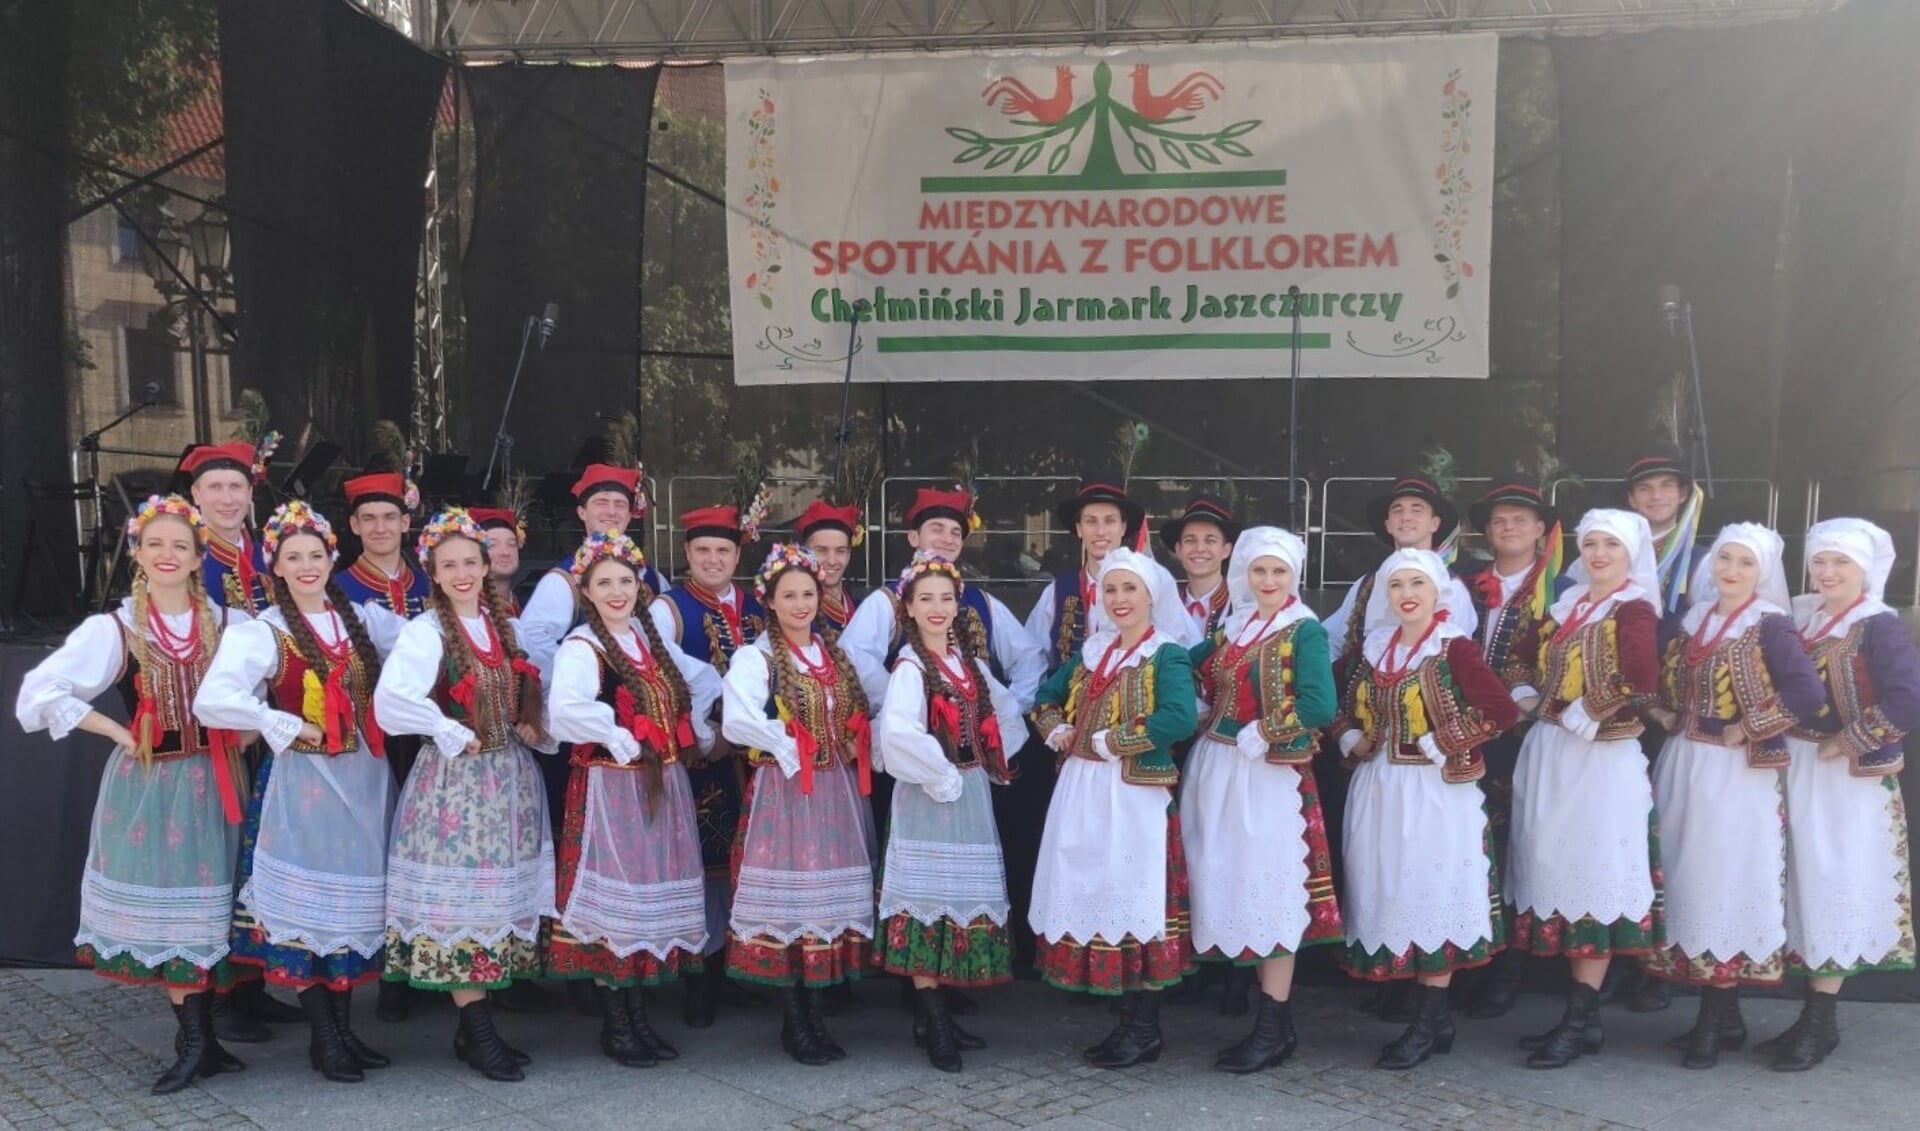 Zowel in de tent op het Kerkplein als in de muziekkoepel zijn er doorlopend optredens van diverse binnen- en buitenlandse folkloregroepen met als grote publiekstrekker Song Dance Ensemble Krakus uit Polen. Foto: PR